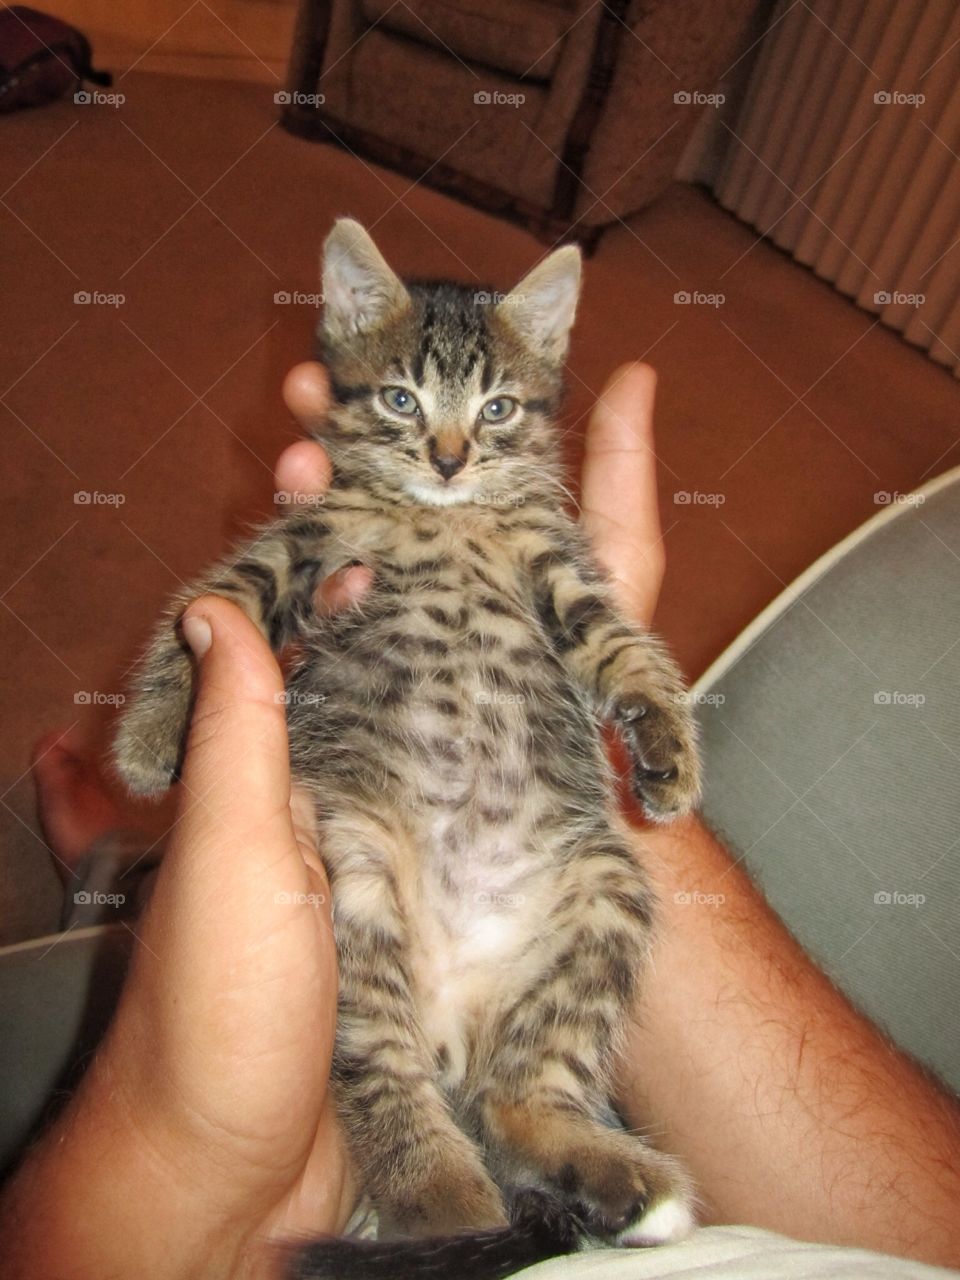 Kitten relaxing in his owners hands.